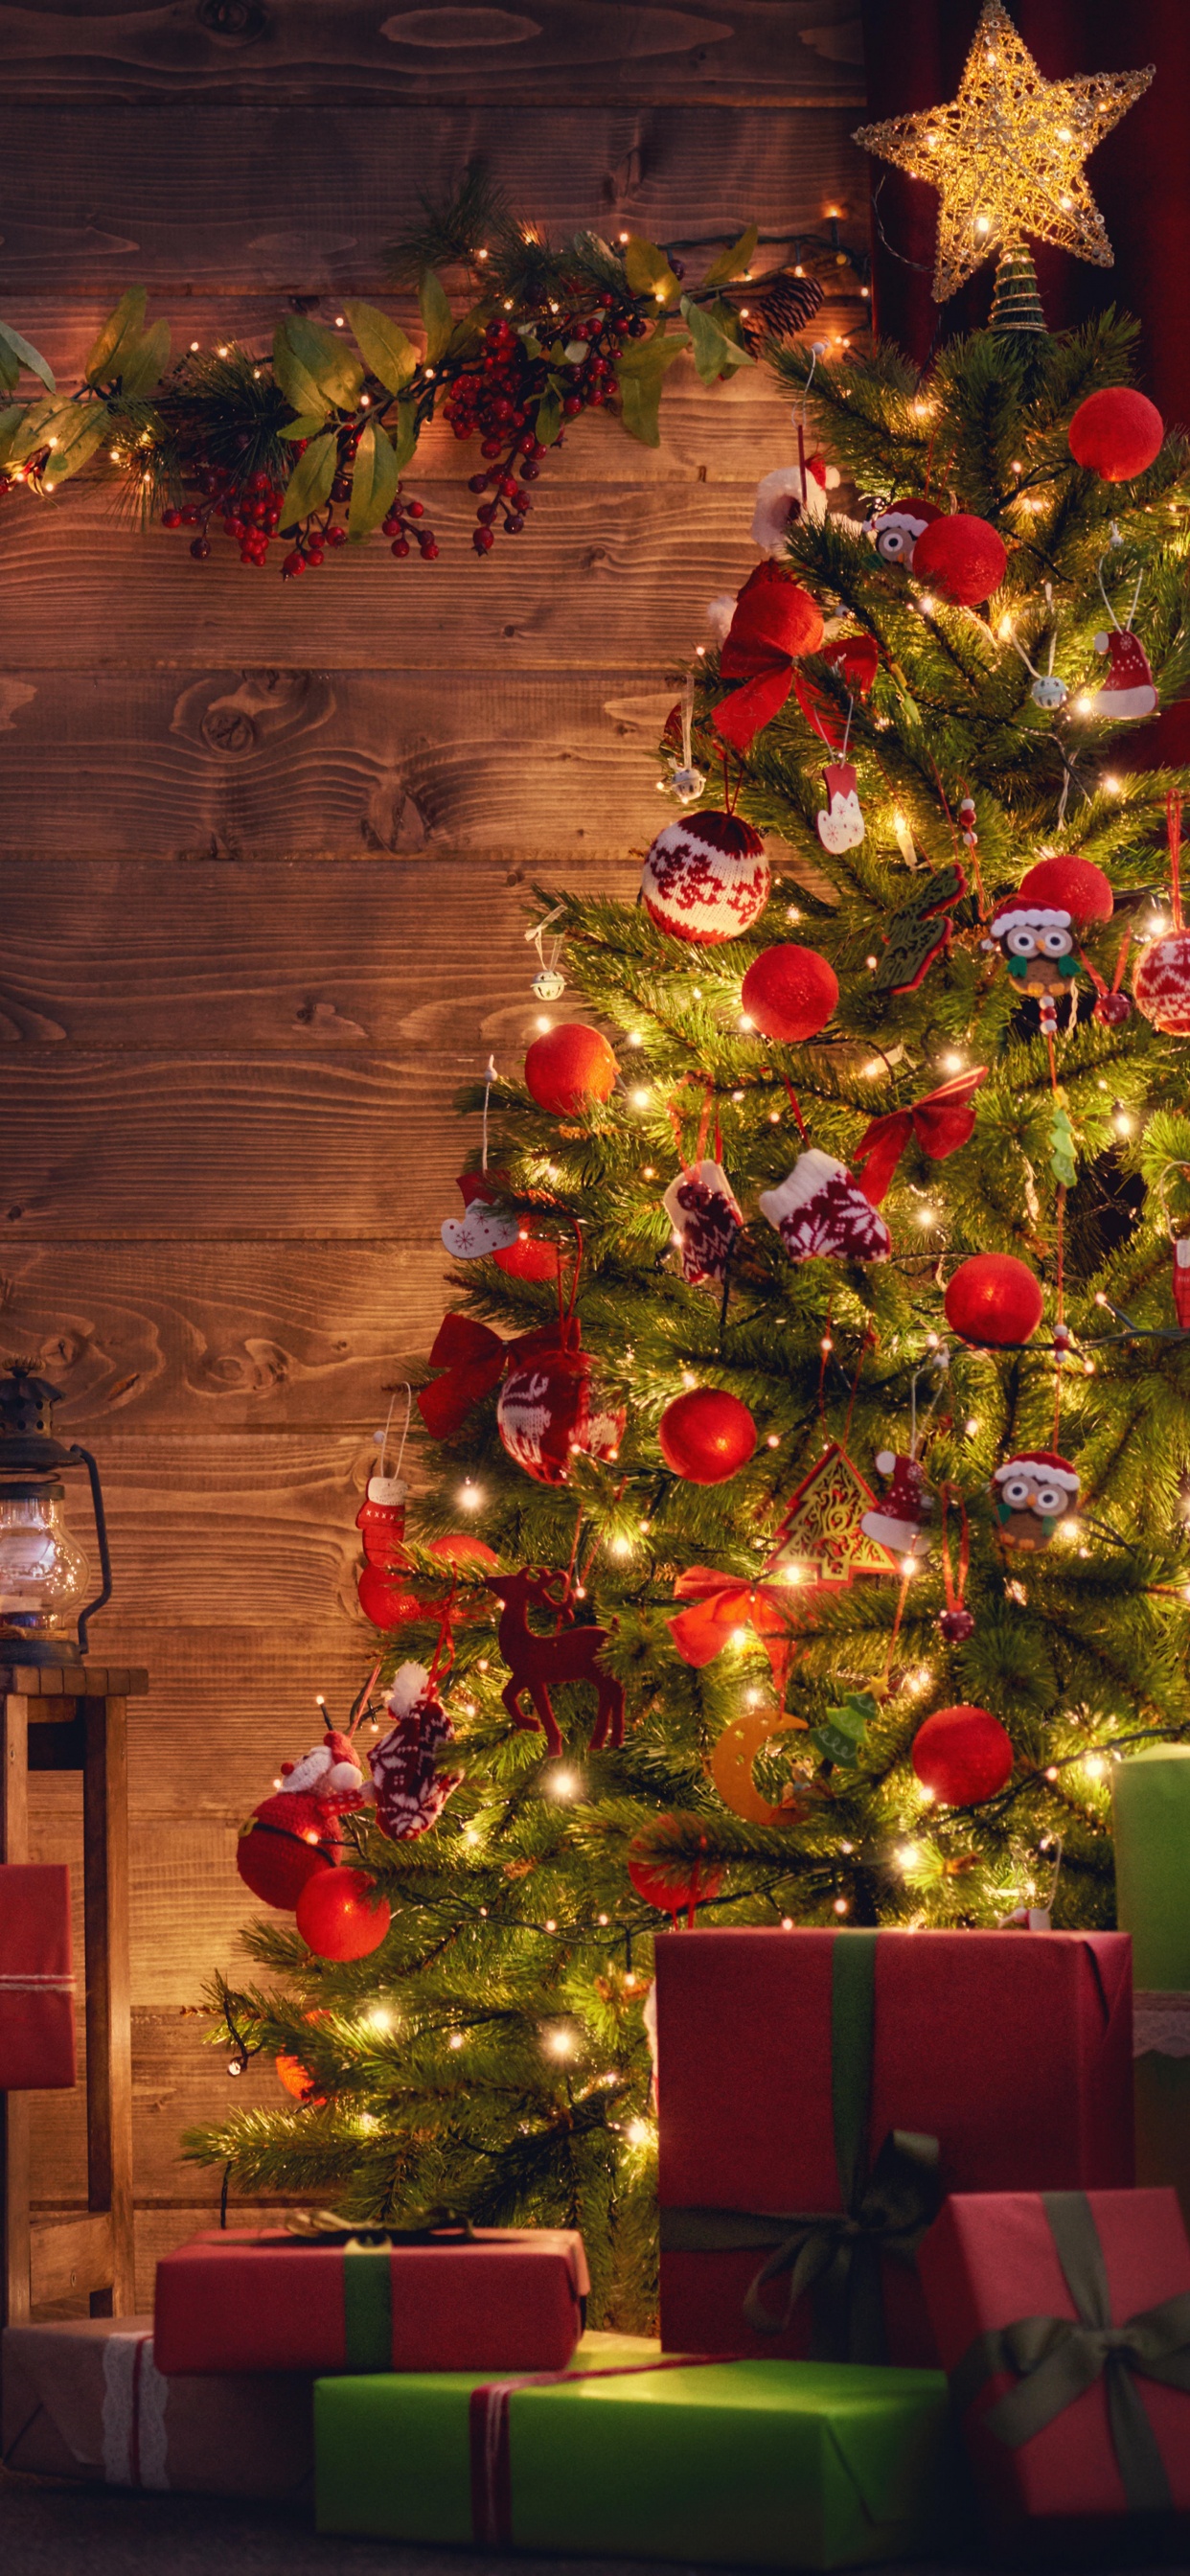 圣诞树, 圣诞节那天, 圣诞装饰, 圣诞节, 圣诞彩灯 壁纸 1242x2688 允许